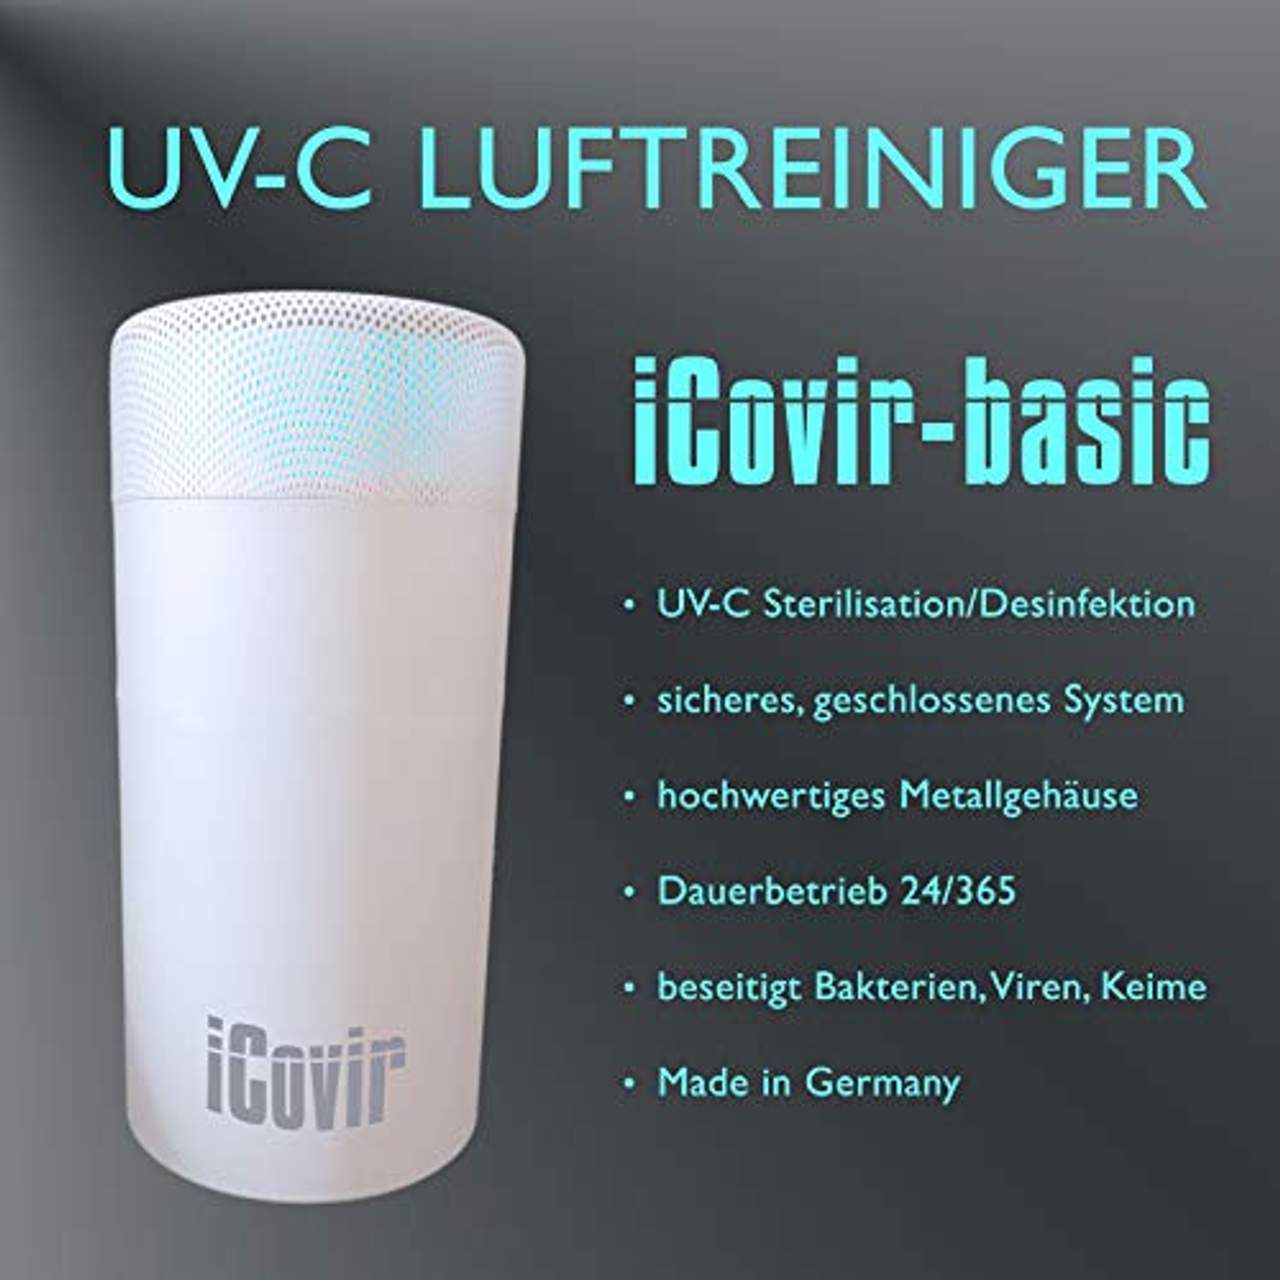 iCovir NEU Basic UVC Luftreiniger reduziert Aerosole